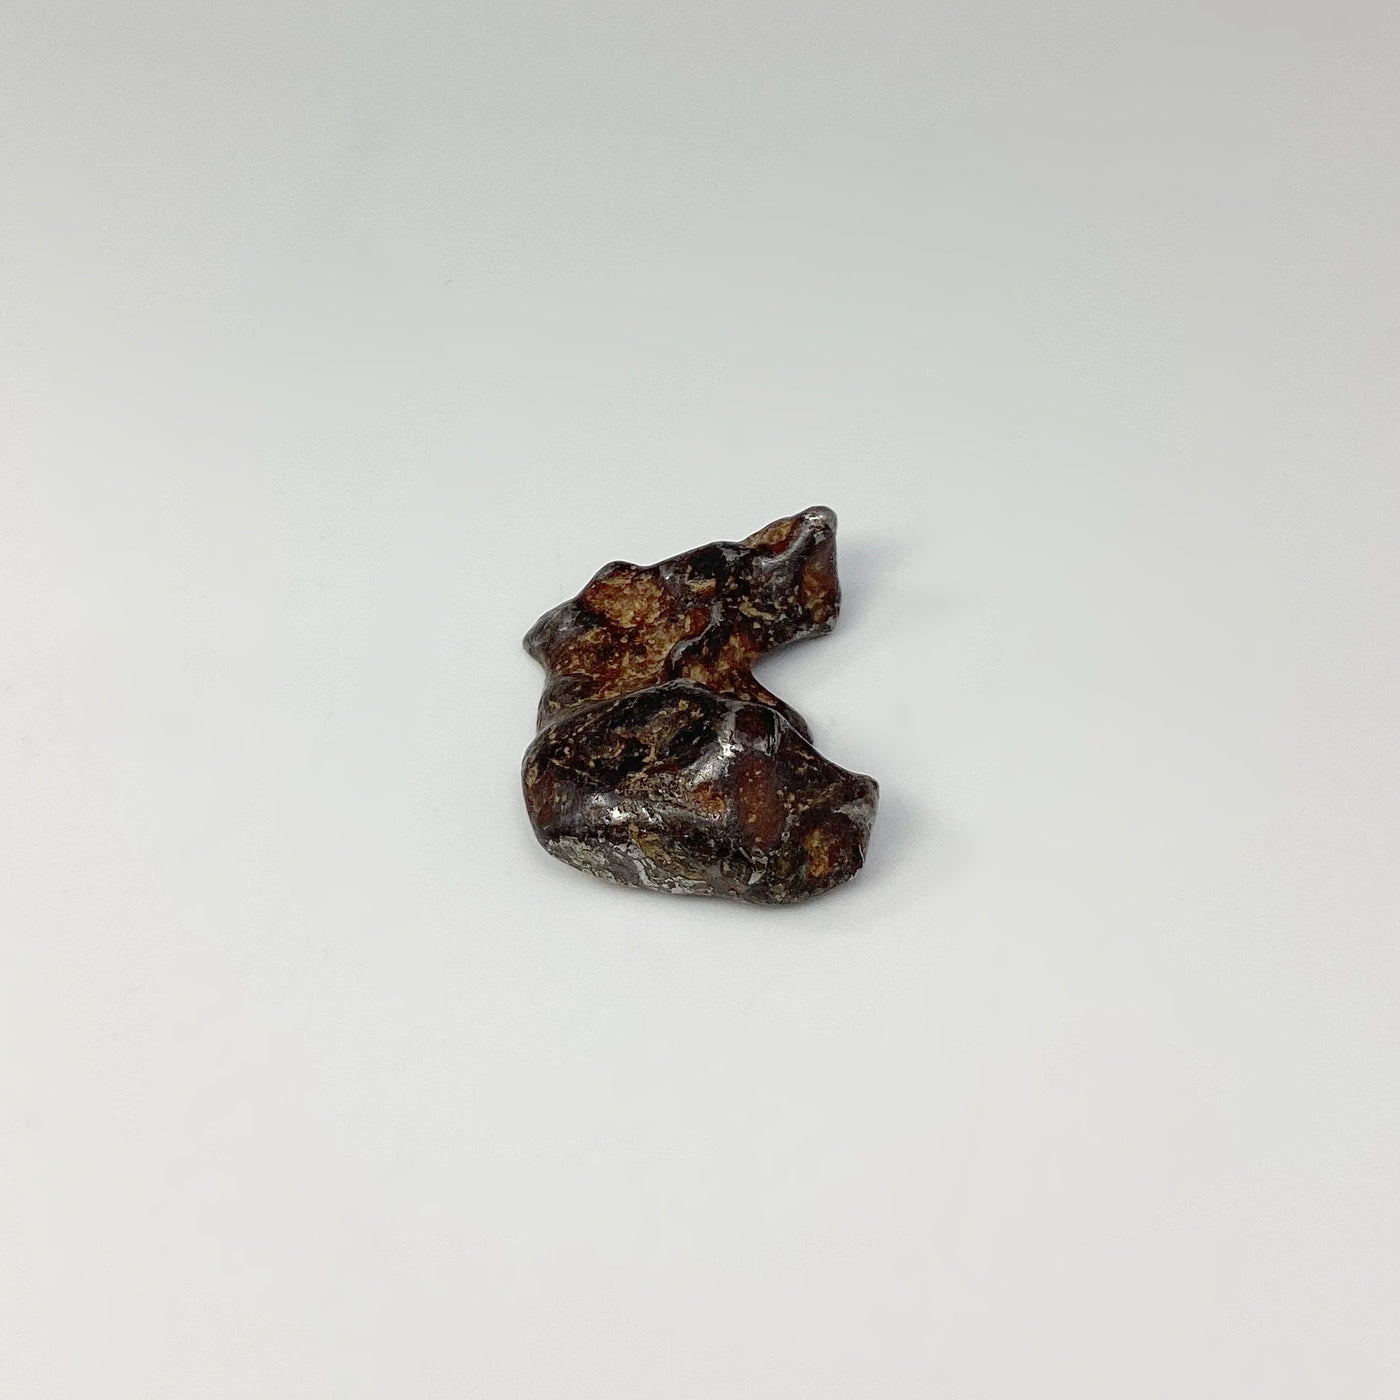 Sericho Meteorite